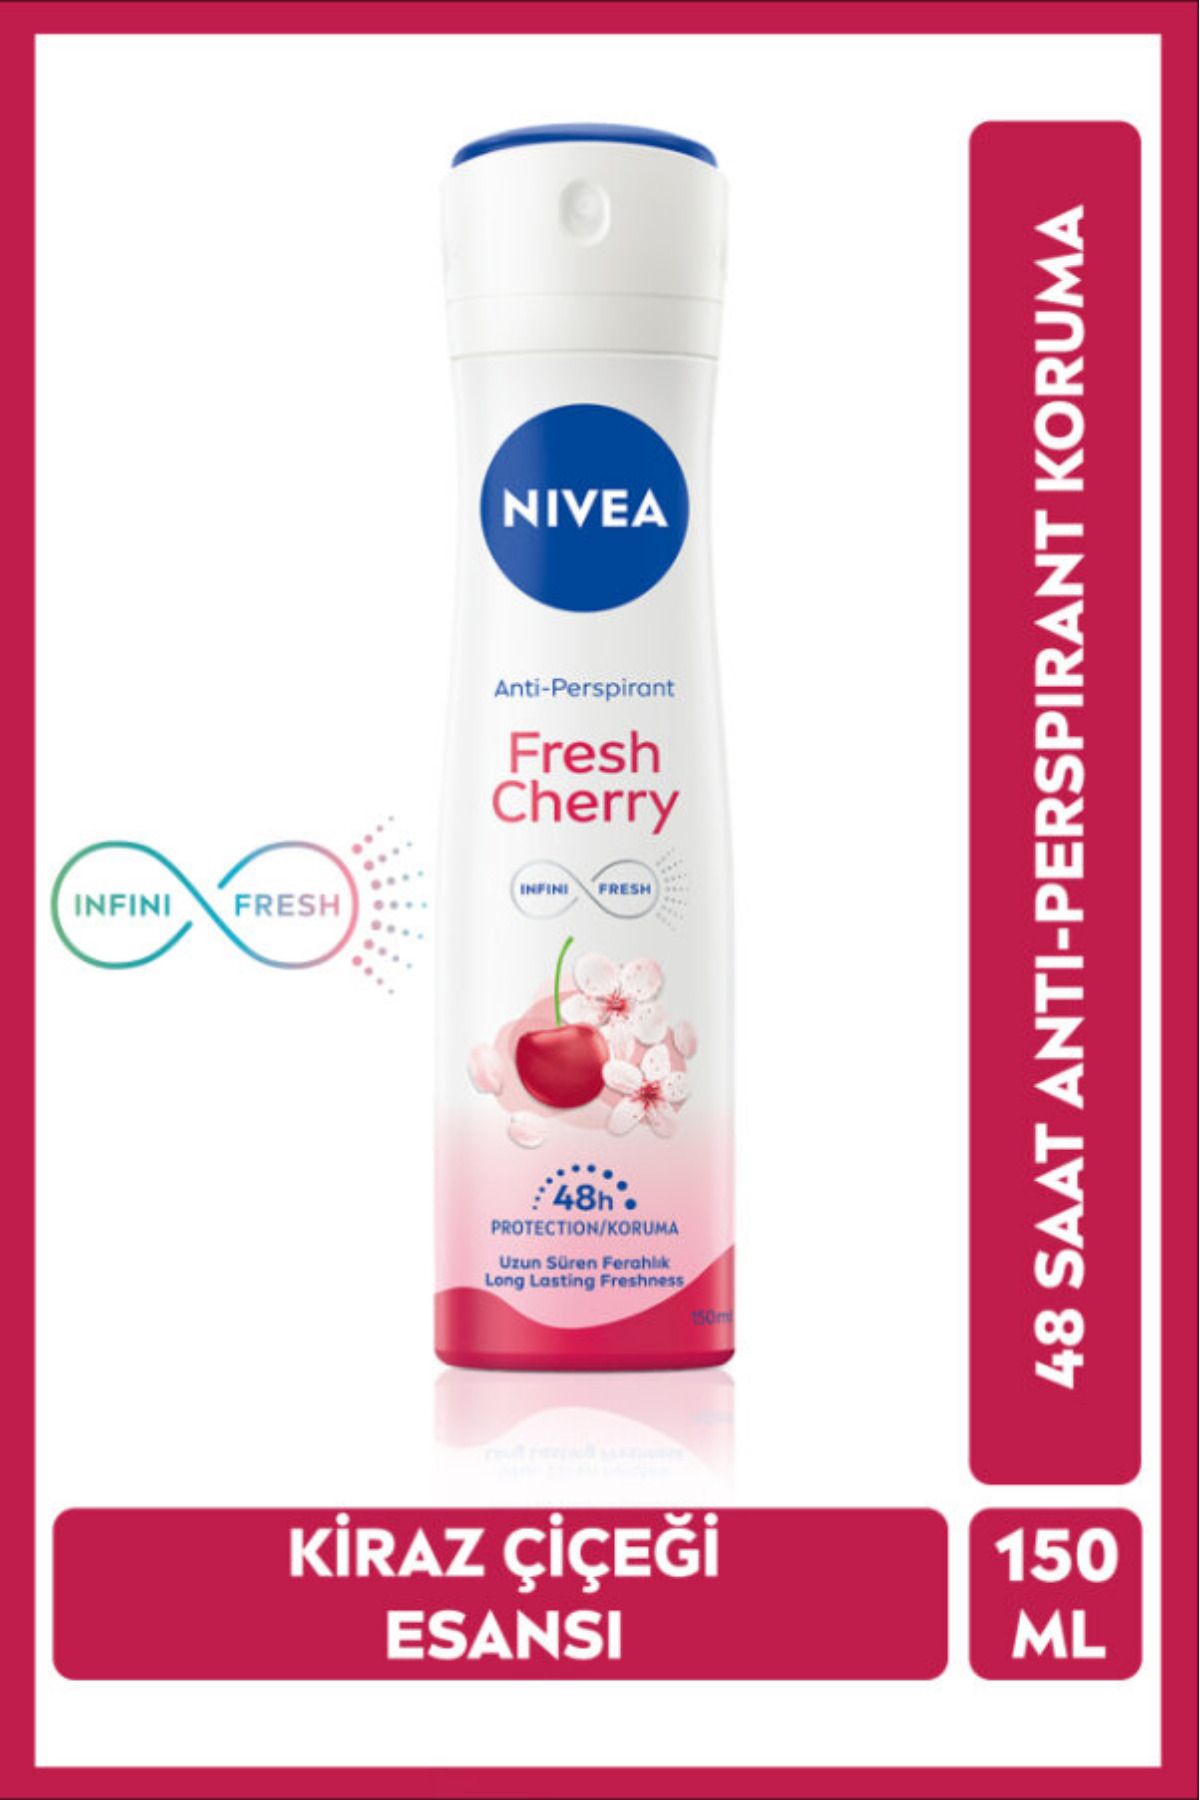 NIVEA Kadın Sprey Deodorant Fresh Cherry 150ml, Gün Boyu Ferahlık, Kiraz Kokusu, 48 Saat Ter Koruması